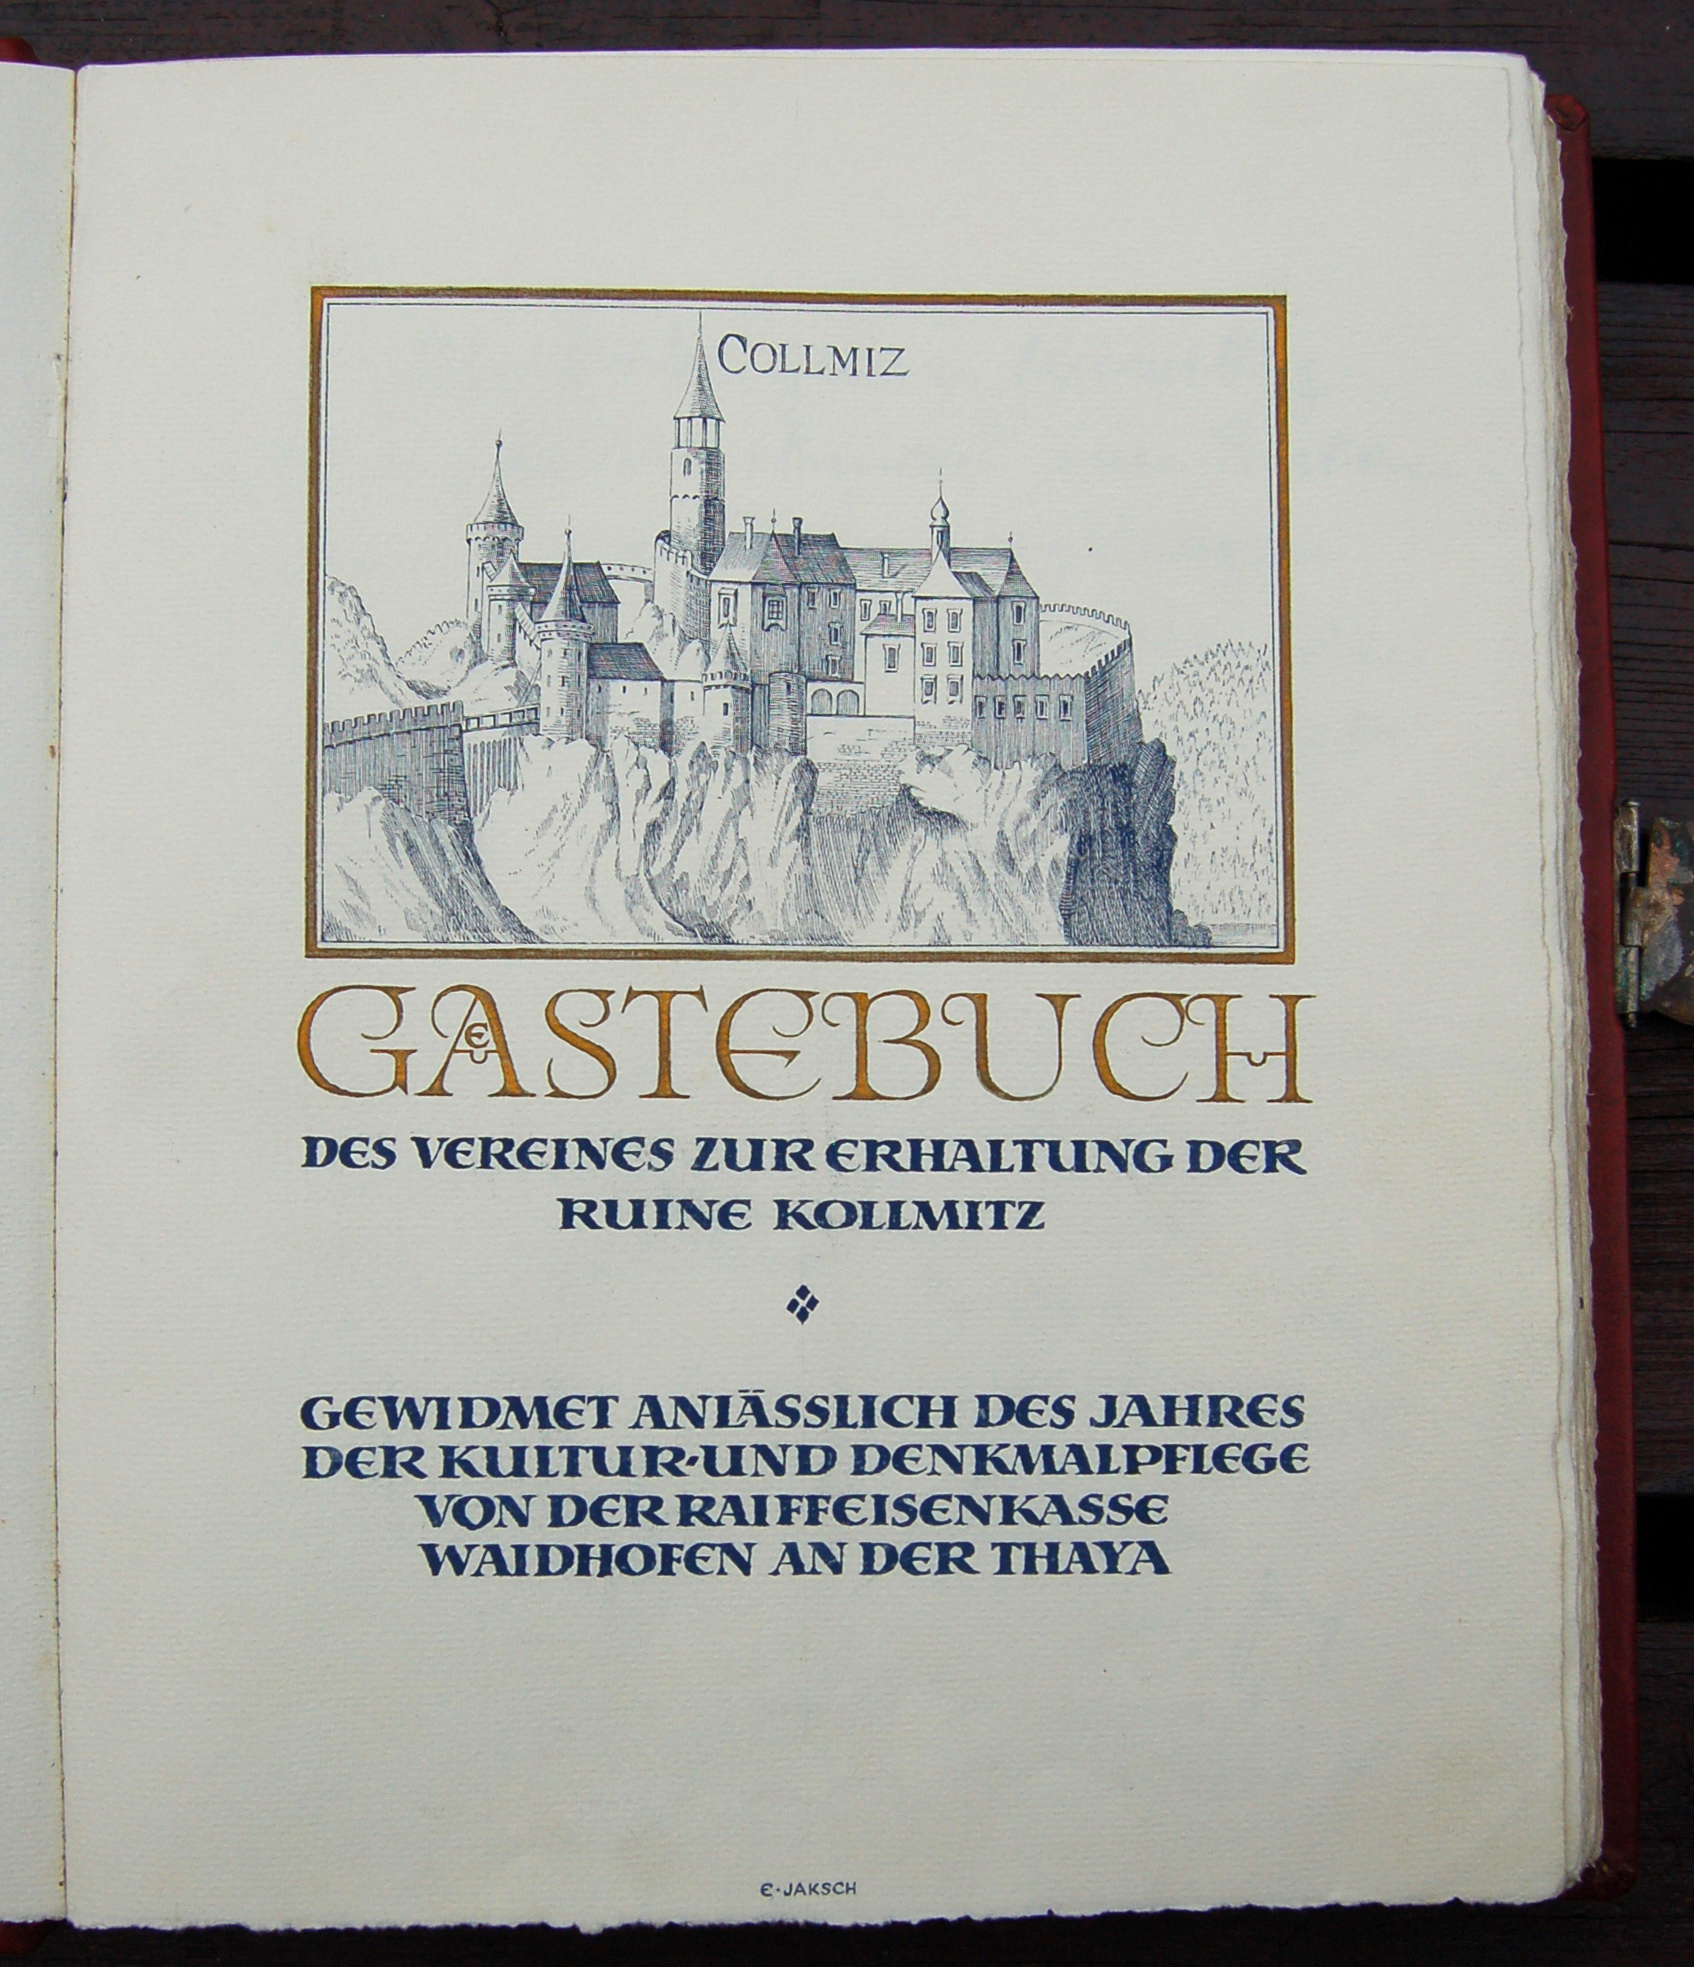 Ruine Kollmitz - Gstebuch Schmuckseite  Gewidmet von der Raiffeisenkasse Waidhofen an der Thaya -   Michael Ambrosch